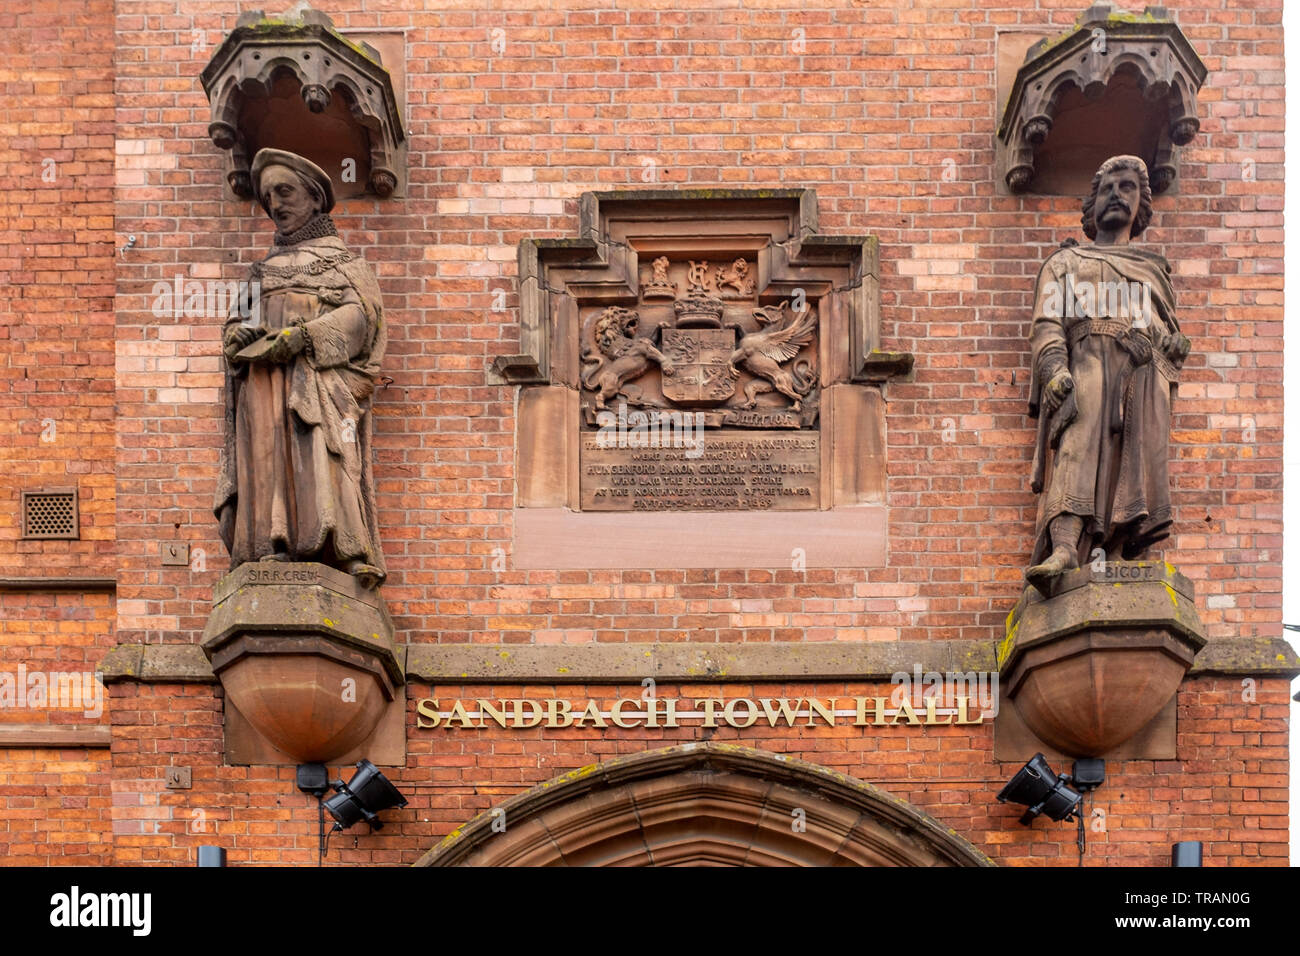 Détail de l'Hôtel de Ville de Sandbach, statue sur la gauche est Monsieur R et de l'équipage sur le droit Bigot De Loges, Sandbach Cheshire UK Banque D'Images